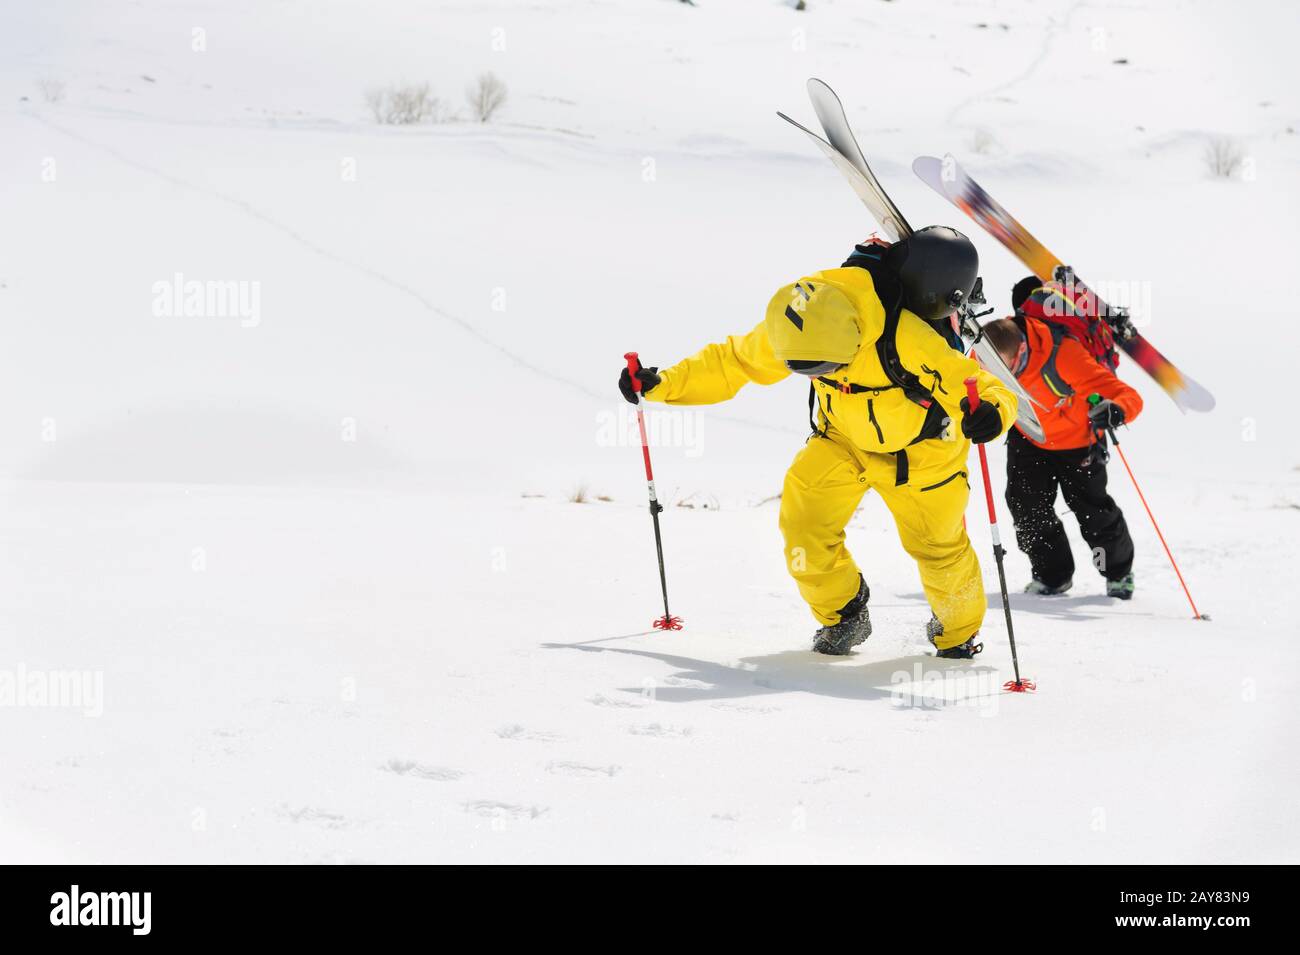 deux freerider à ski grimpent la pente en poudre de neige profonde avec l'équipement à l'arrière fixé sur le sac à dos. Banque D'Images